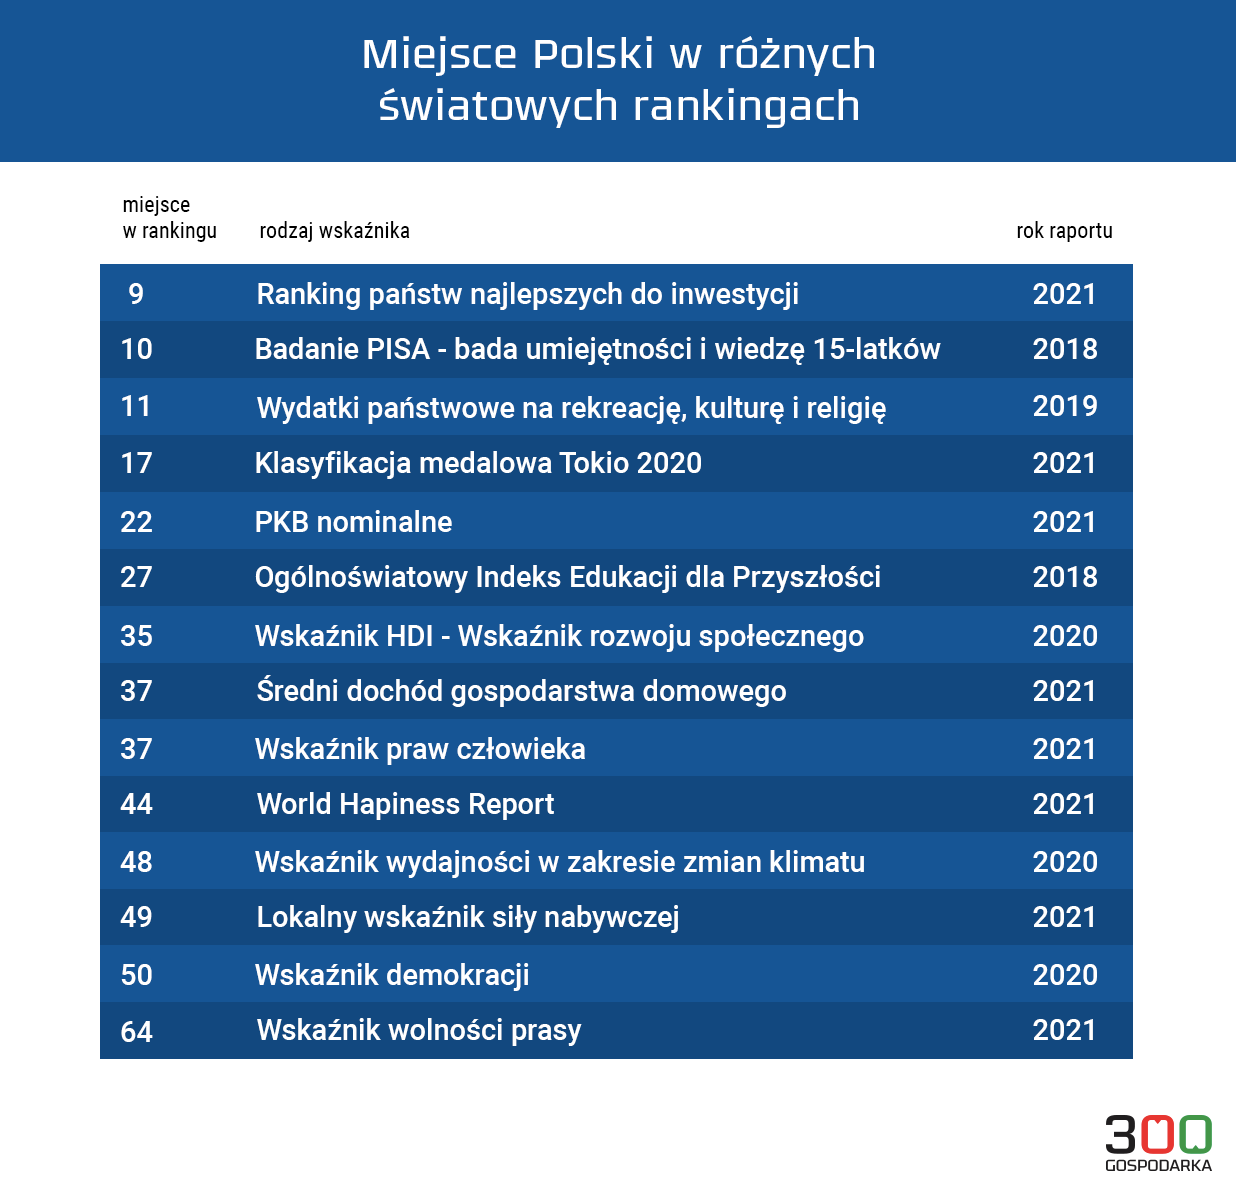 Miejsce Polski w wybranych rankingach. Grafika: Adrian Cibicki, 300Gospodarka